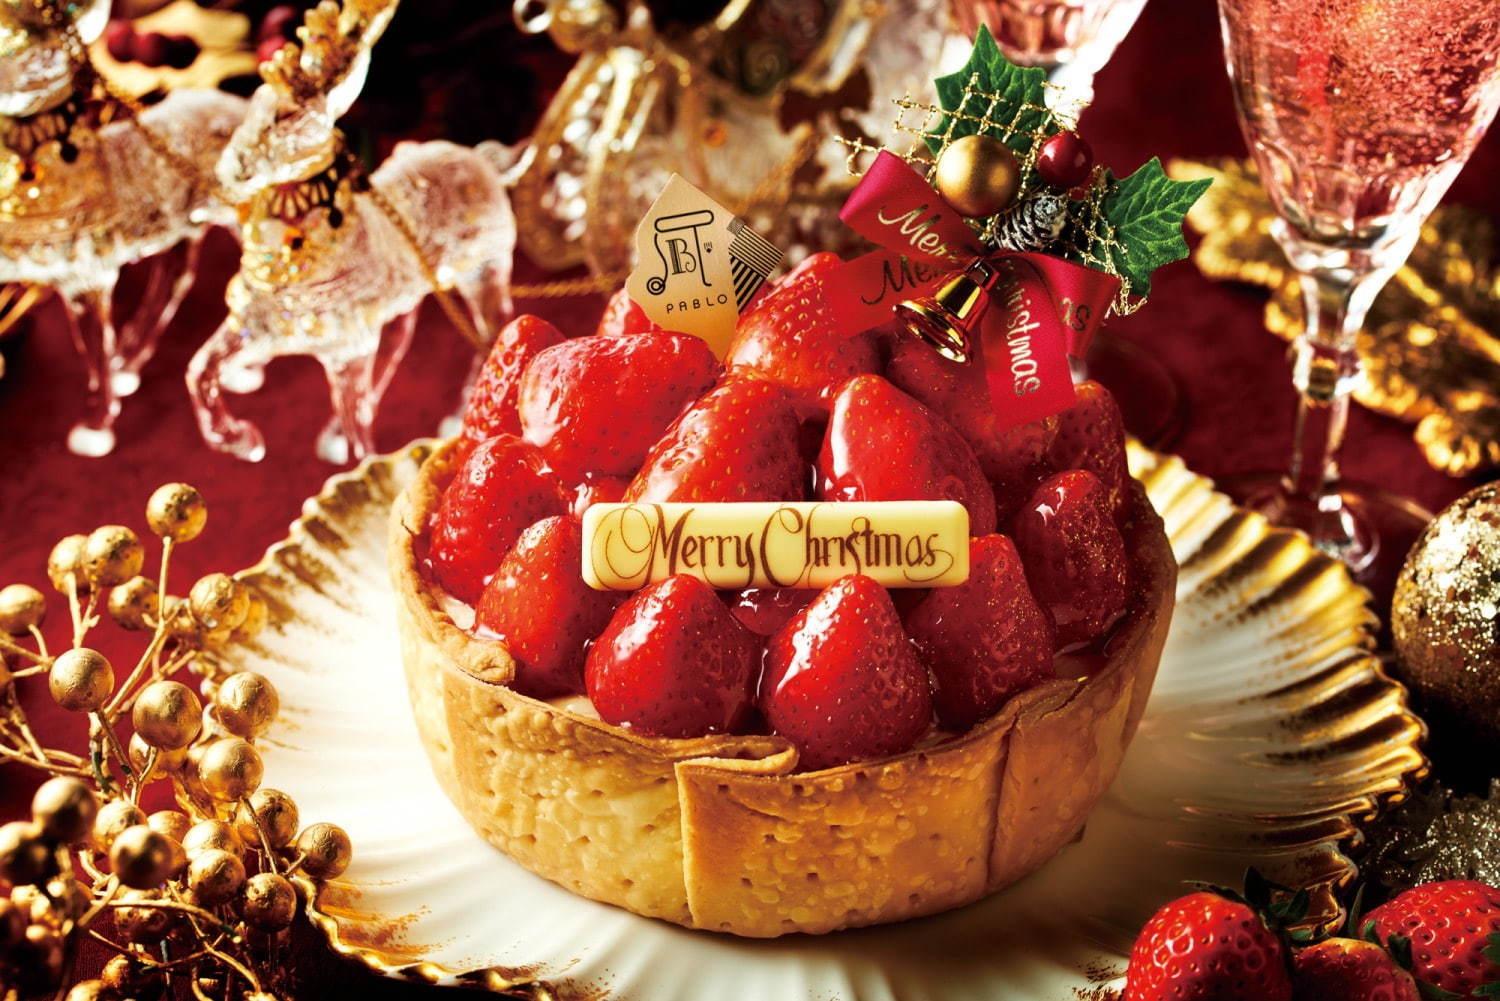 パブロのクリスマス限定“山盛り”いちごやフランボワーズ×ハイカカオチョコのチーズタルト コピー